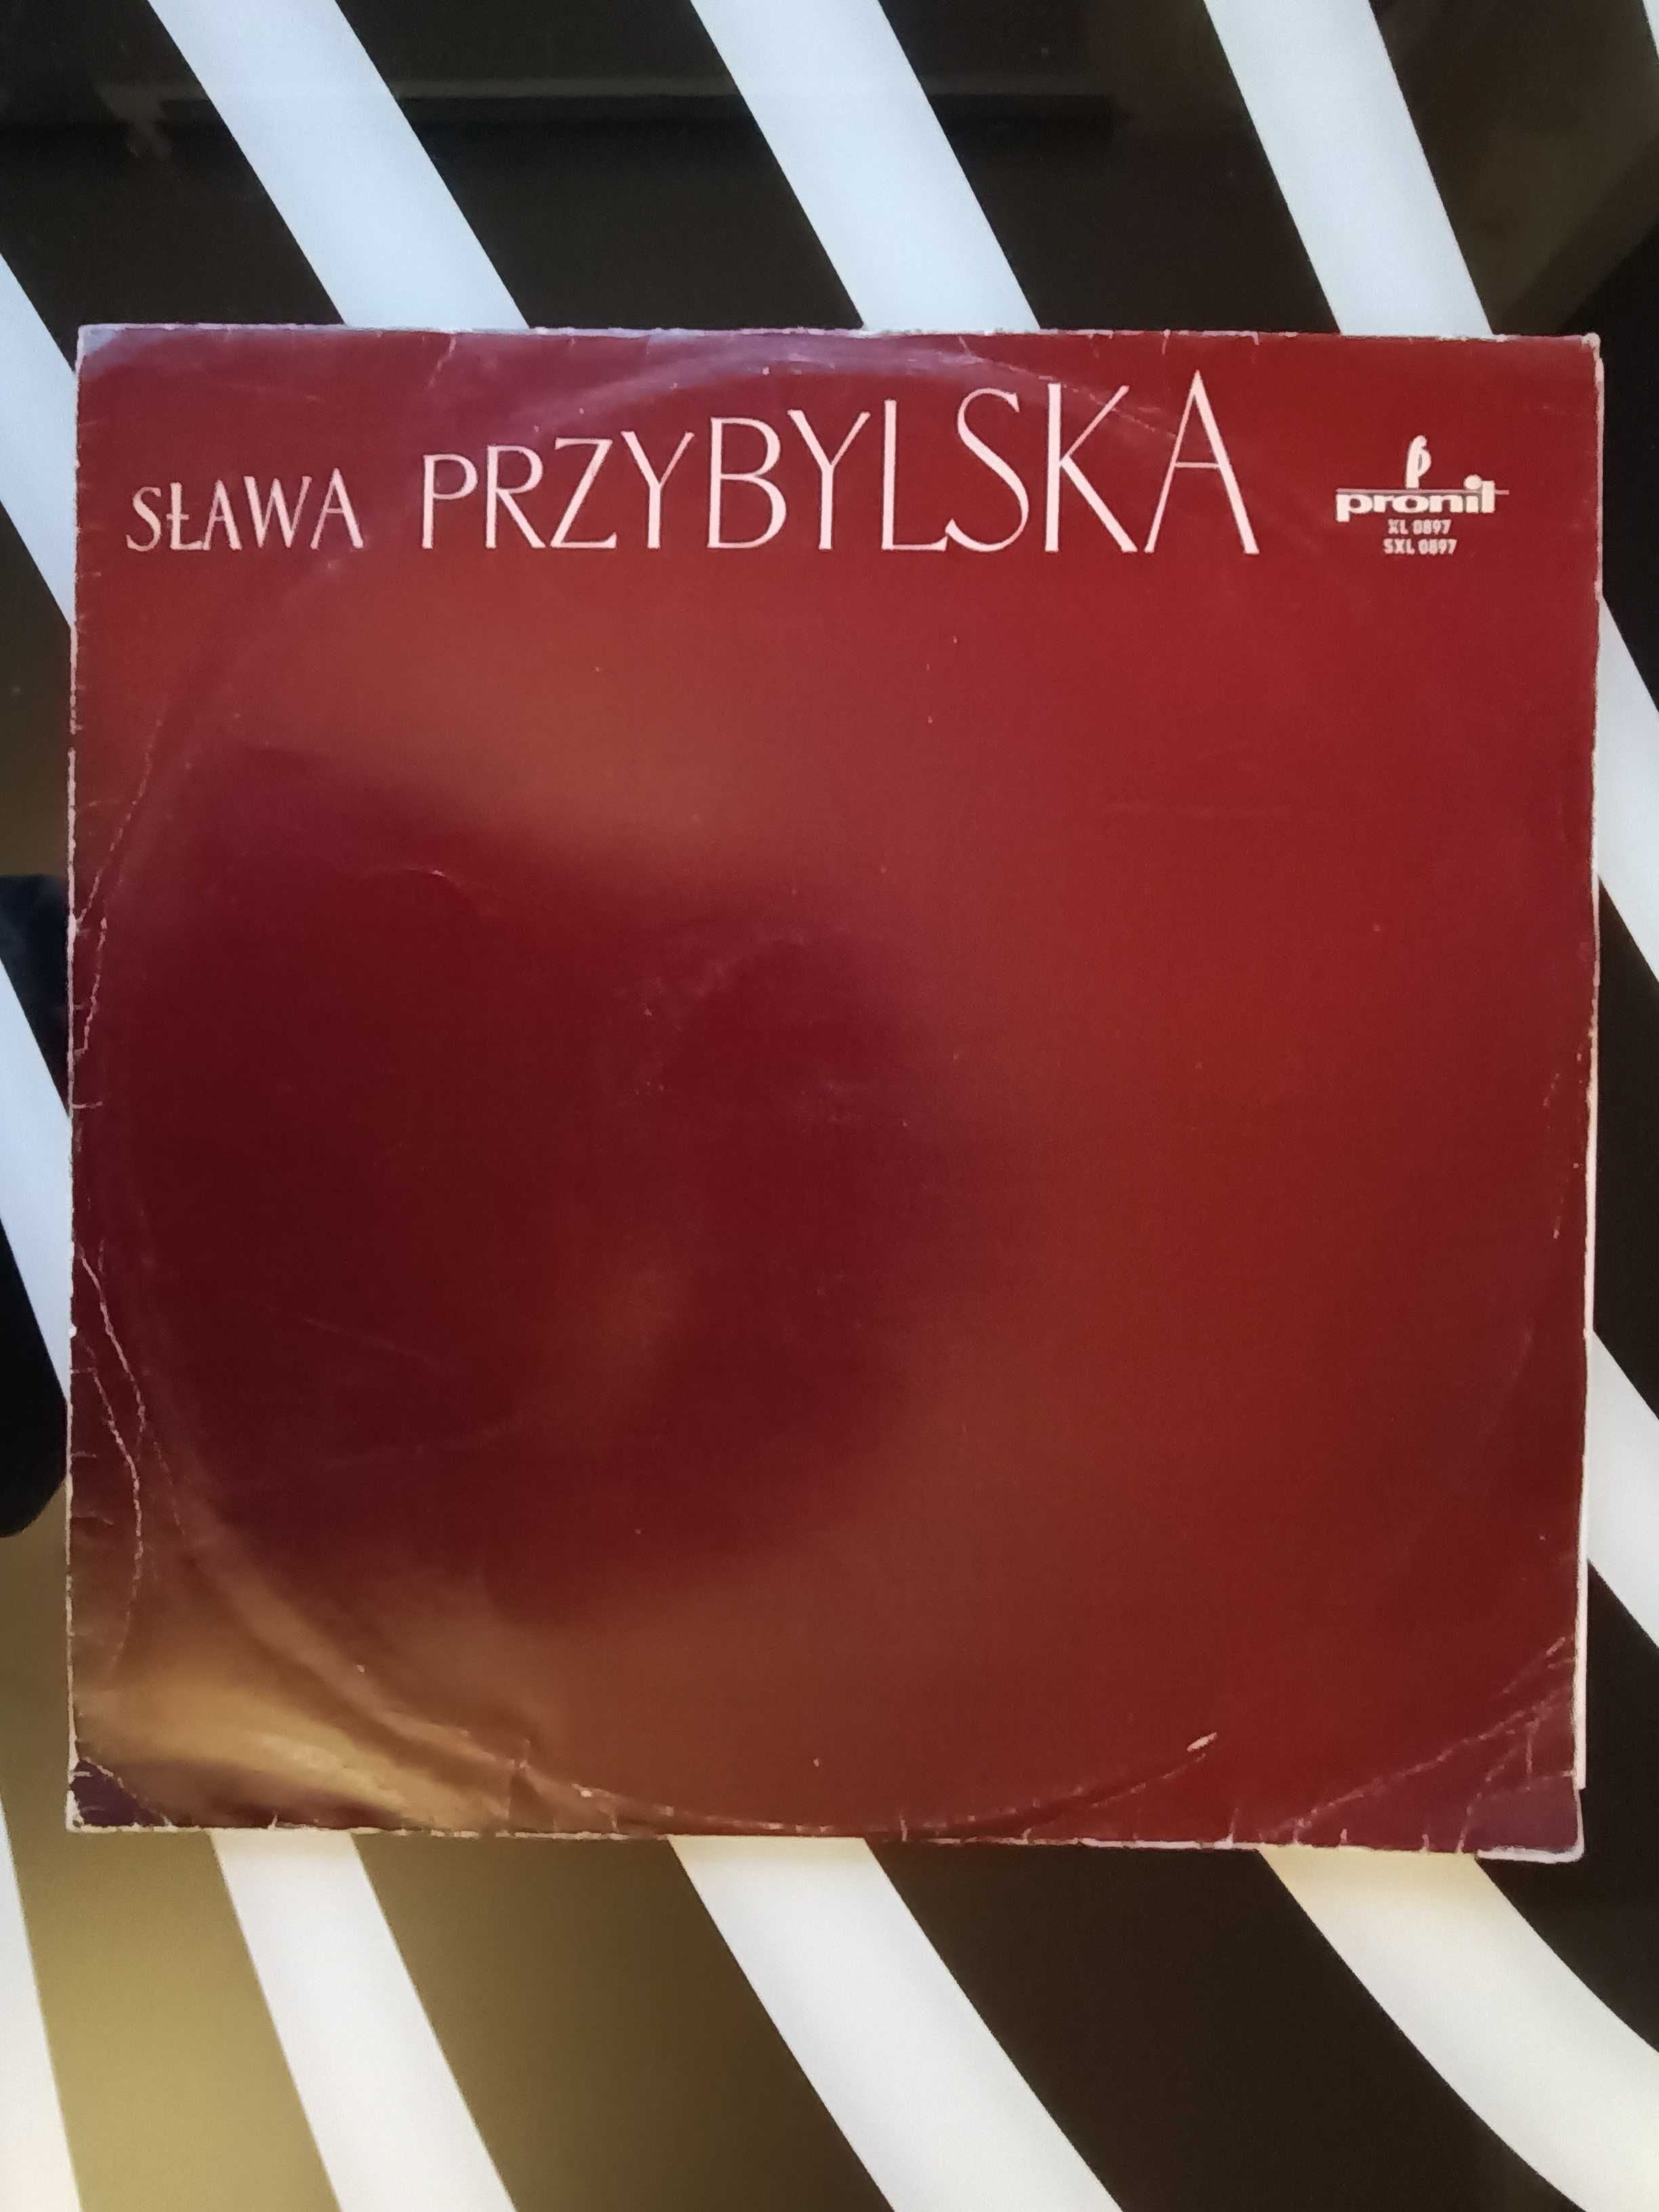 Sława Przybylska winyl LP